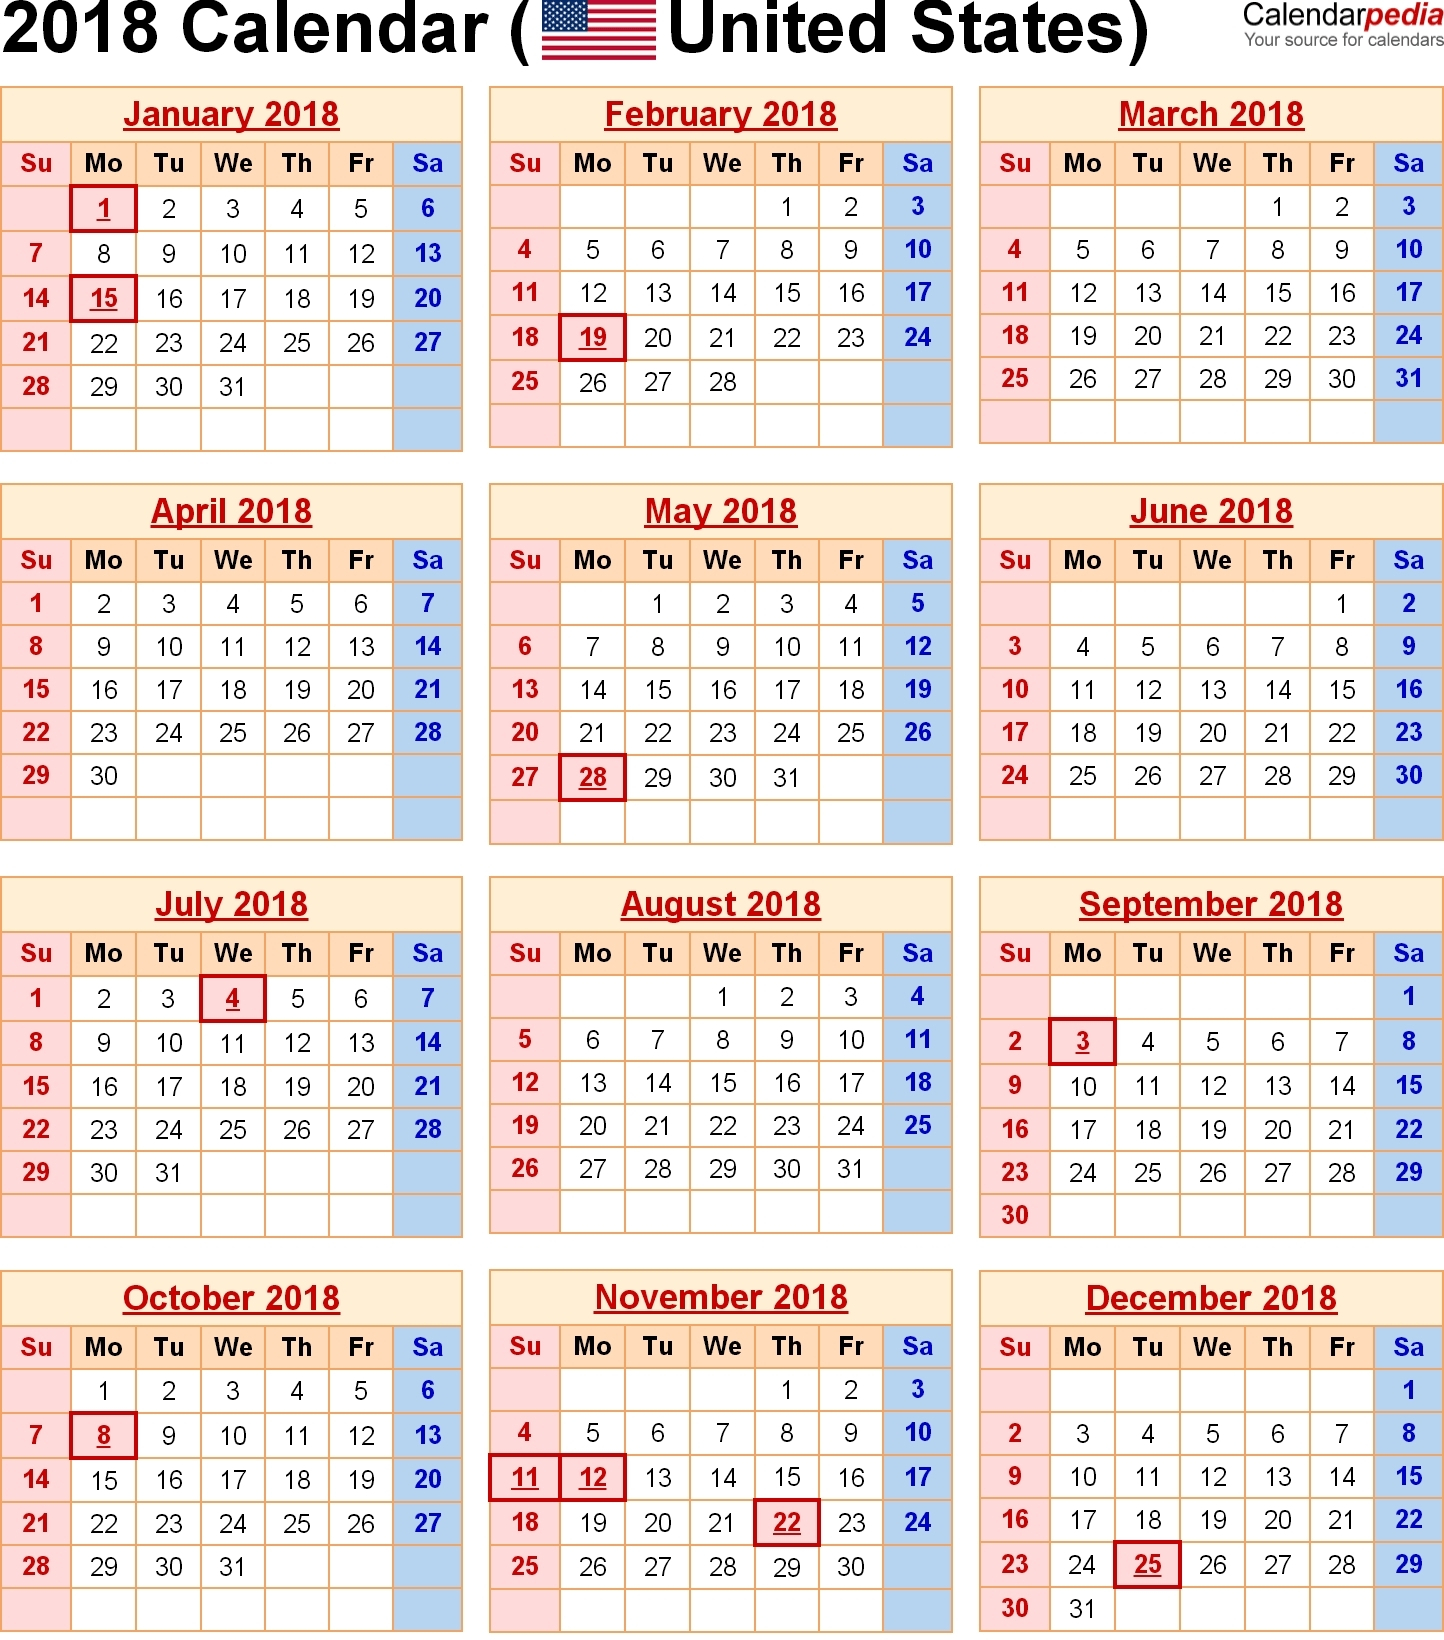 Us Calendar Federal Holidays 2018 | Qualads